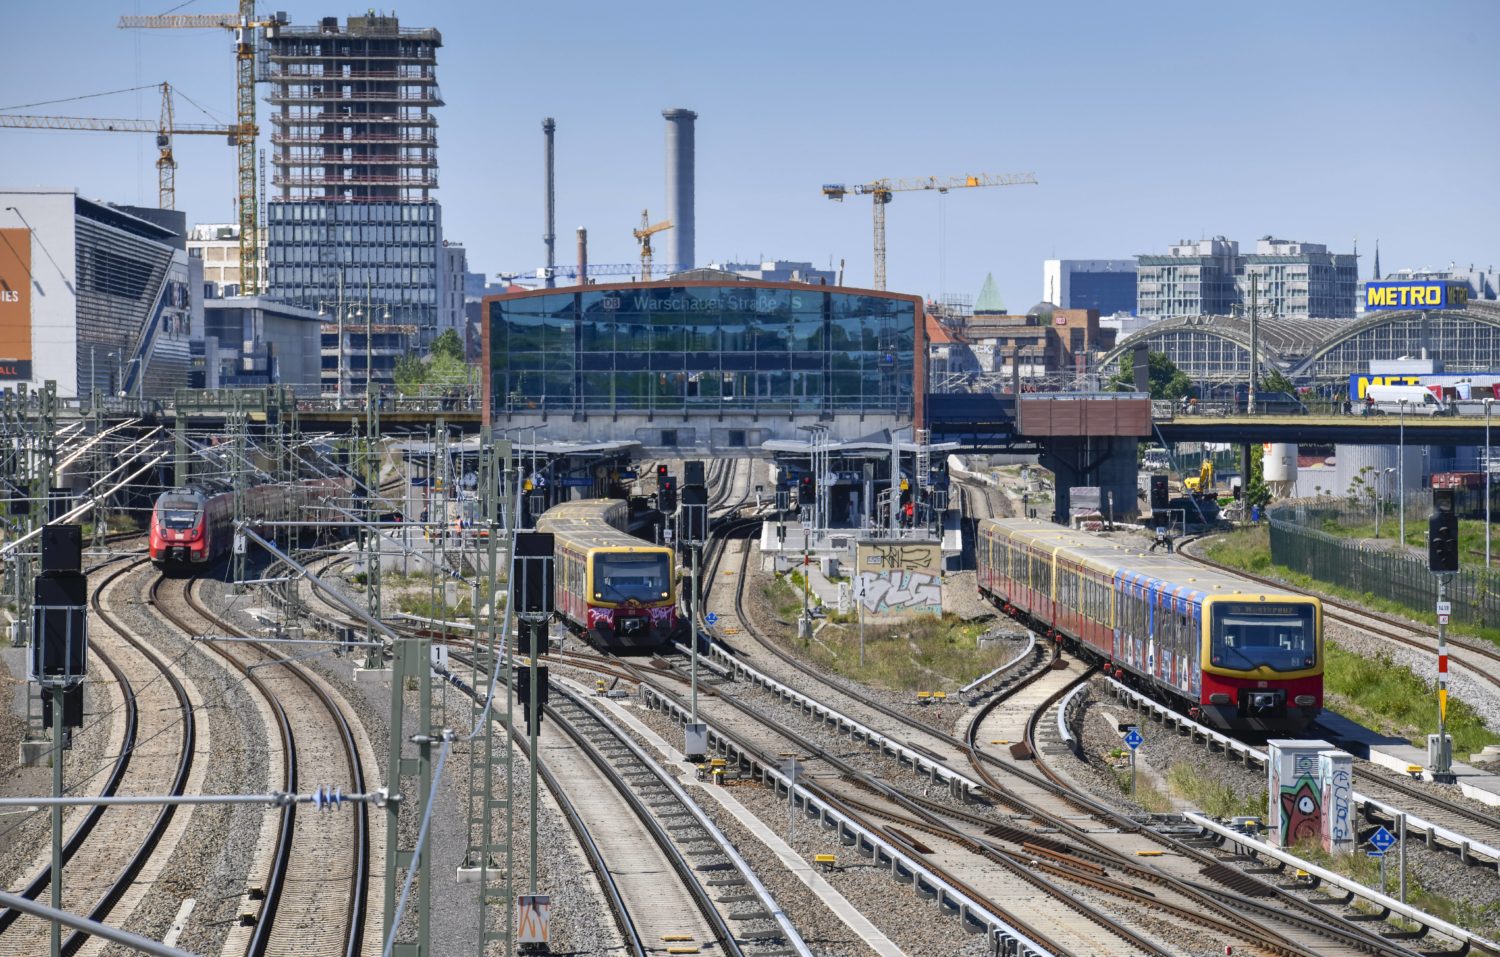 Bahnhöfe Bewertungen: Der Bahnhof Warschauer Straße ist laut Bewertungen bei Google Treffpunkt von Pipi und Popo. Foto: Imago Images/Schöning